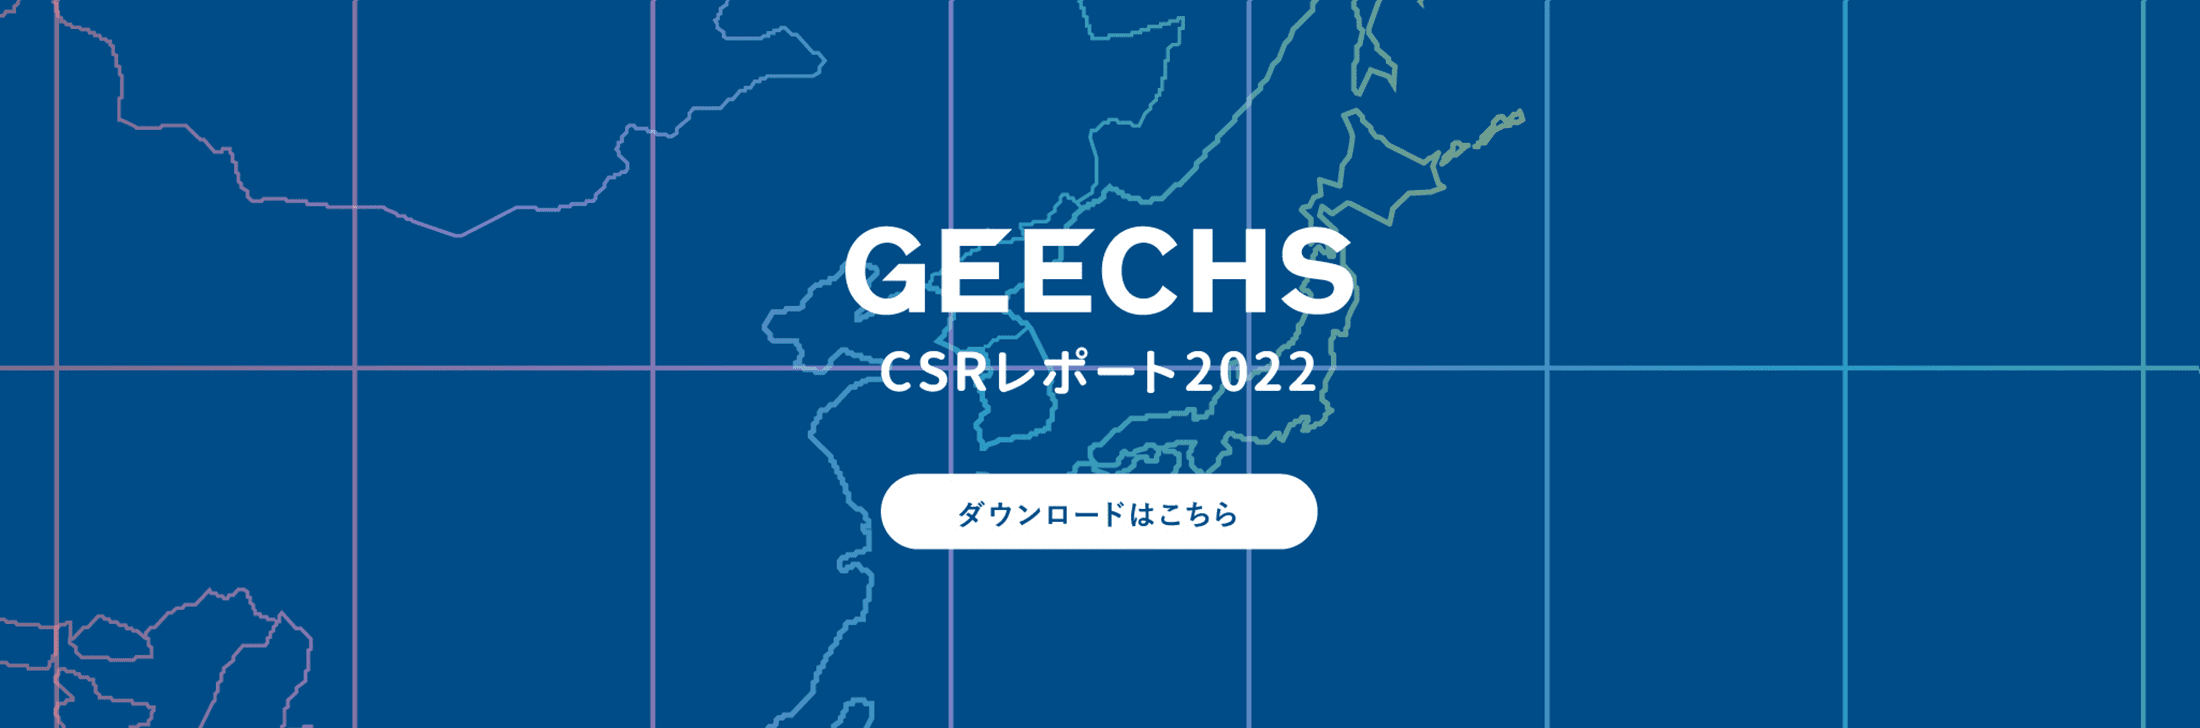 GEECHS CSRレポート2022